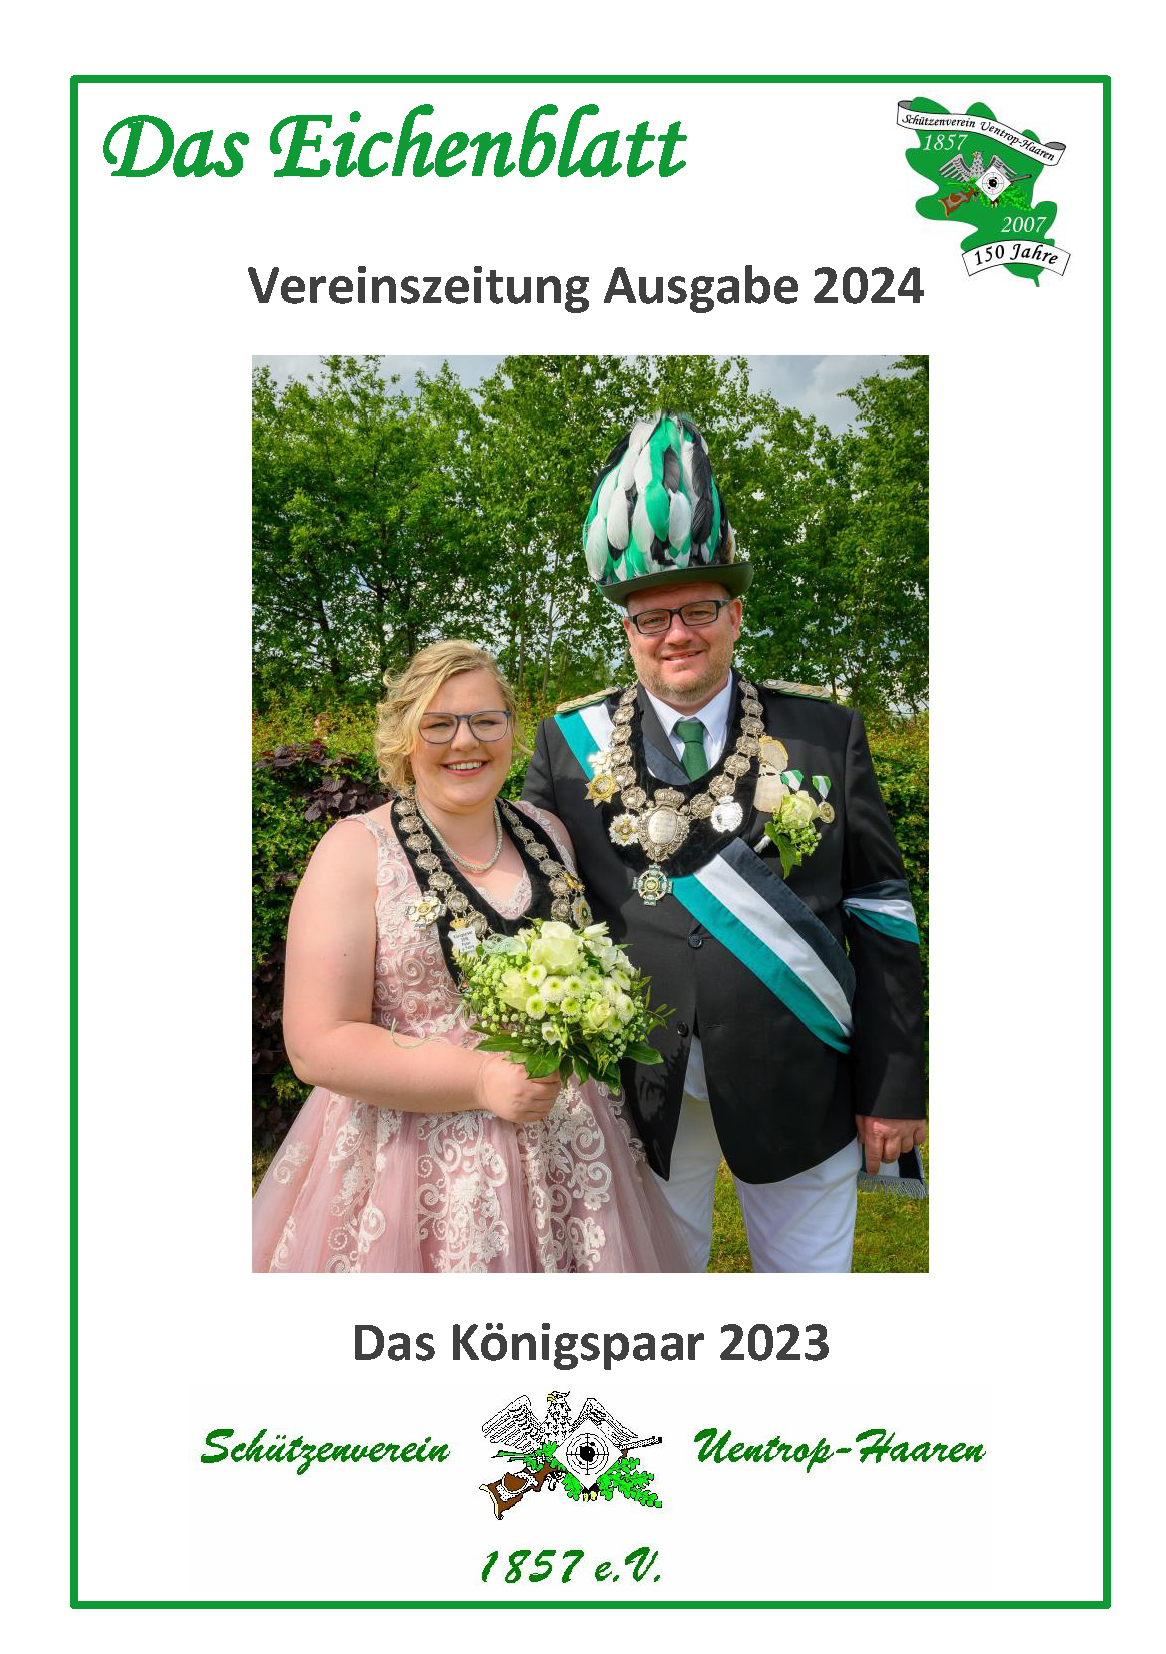 Bild mit einem Foto des amtierenden Königspaar, dem Vereinslogo und dem Eichenblatt